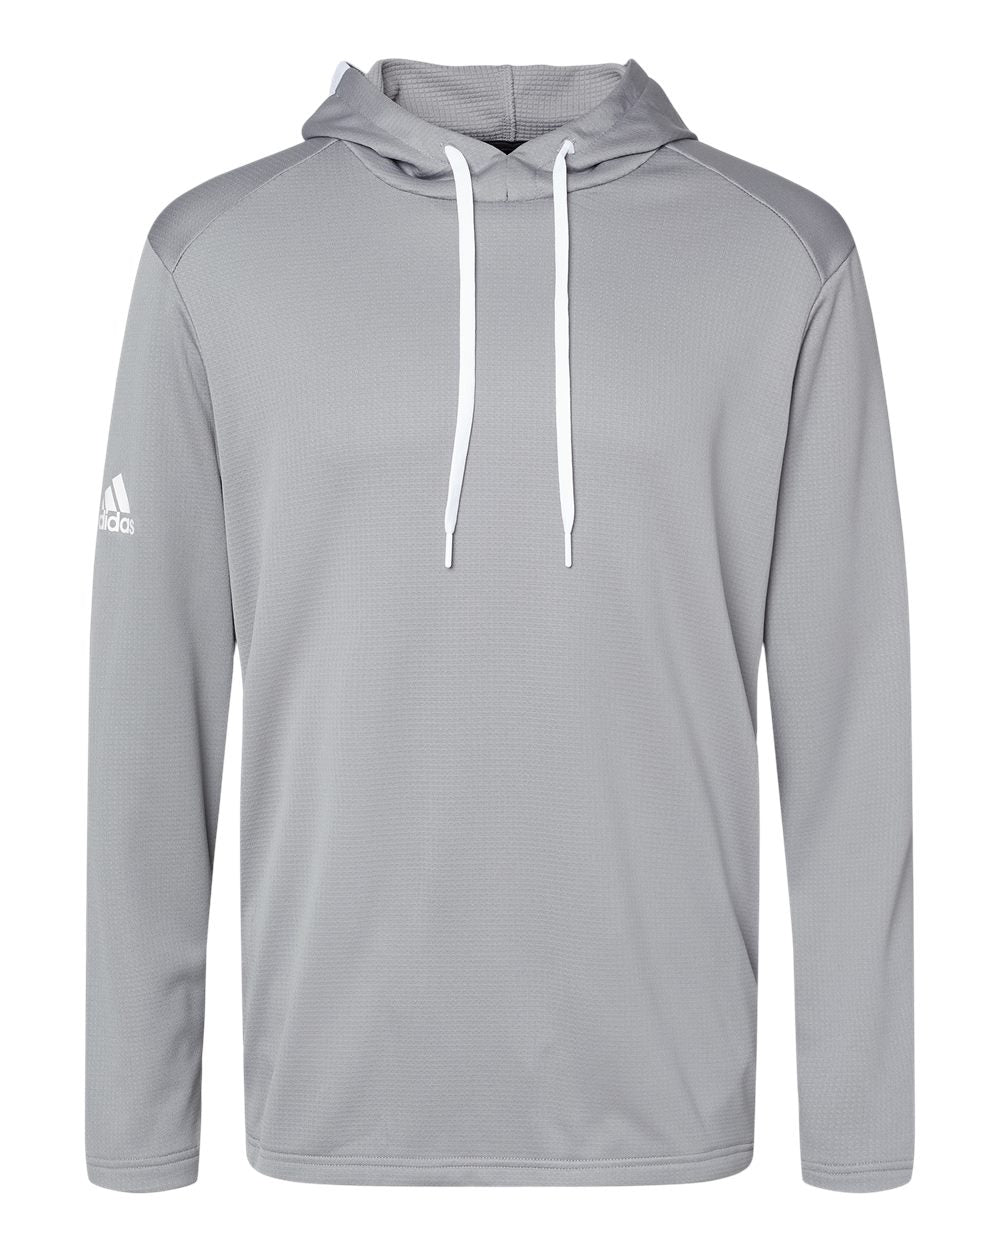 Adidas A530 Textured Mixed Media Hooded Sweatshirt #color_Grey Three